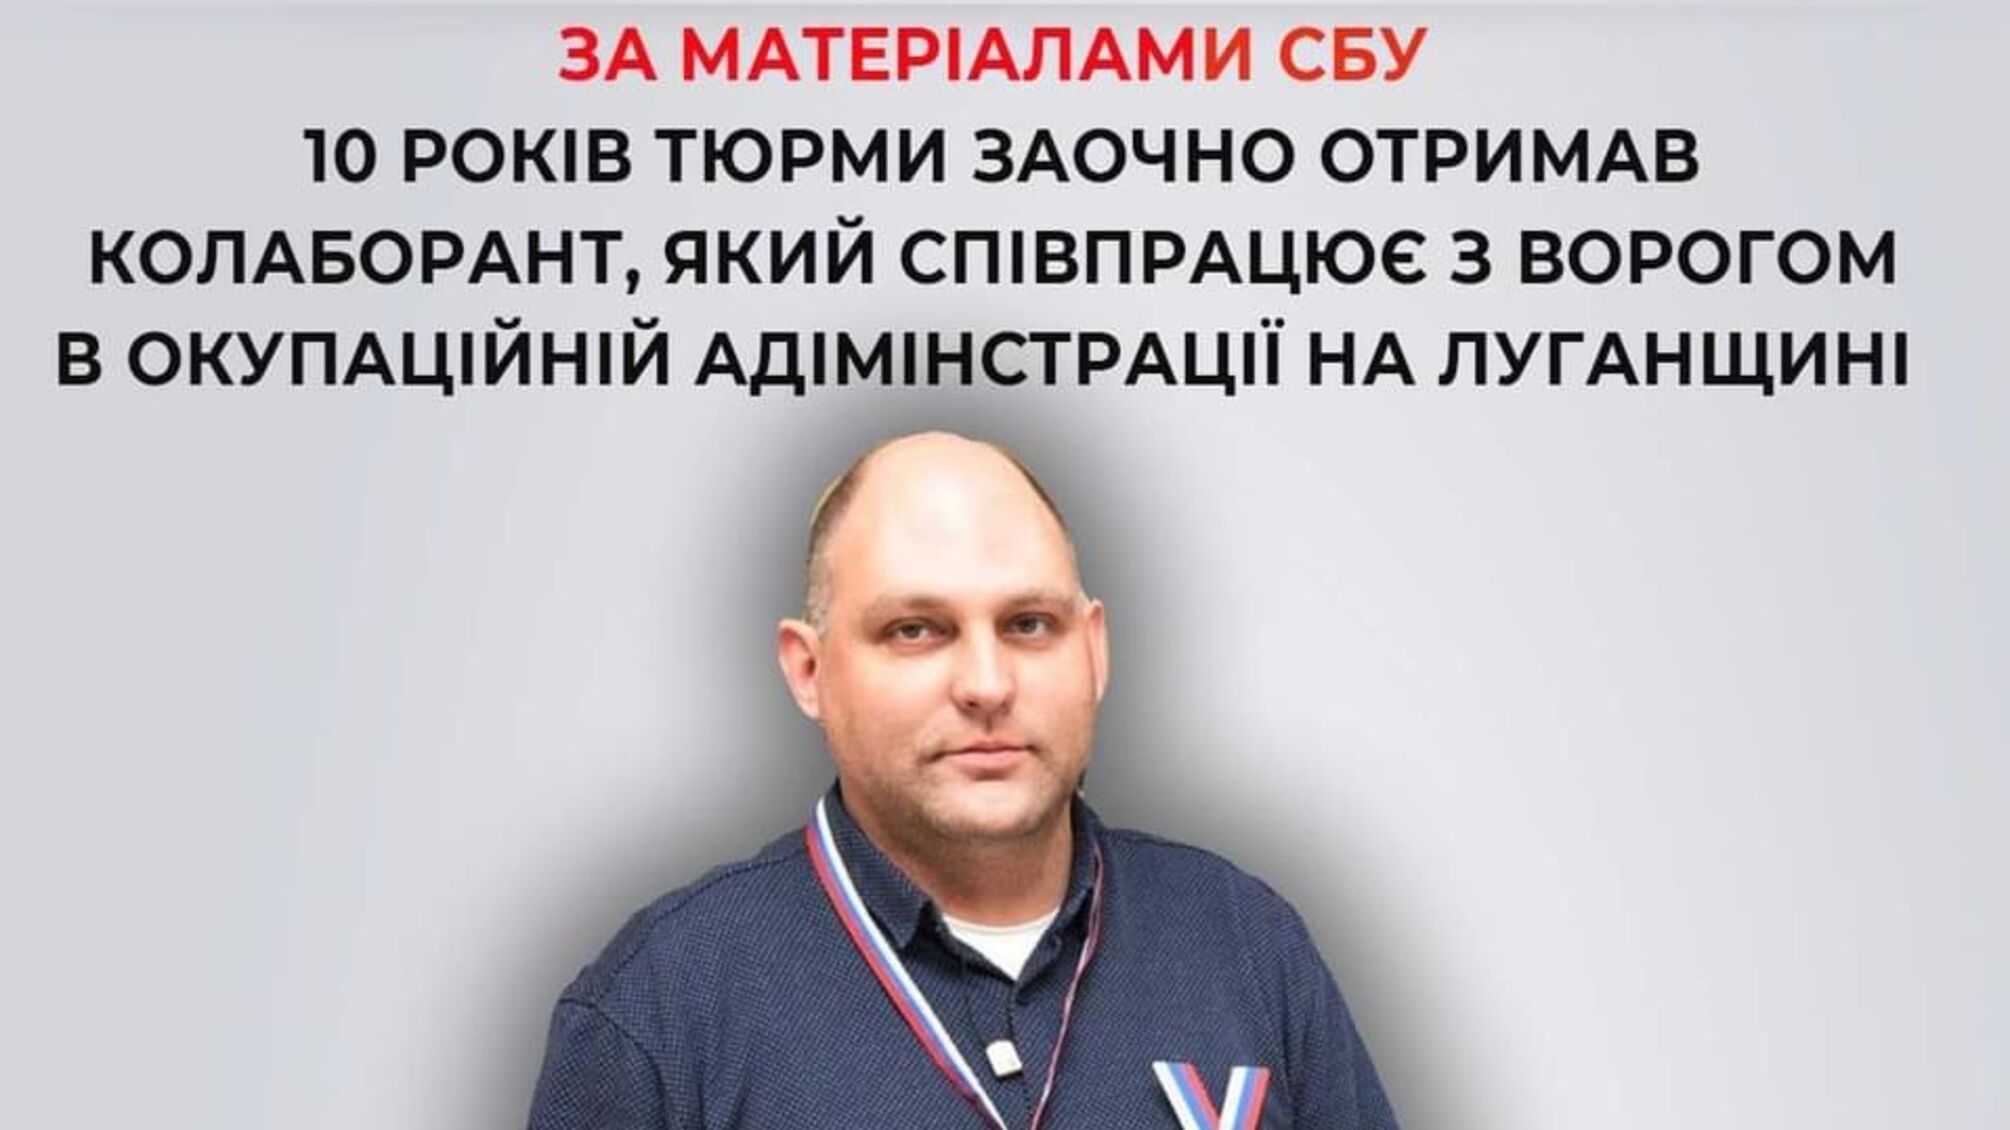 Сотрудничал с врагом в оккупационной администрации в Луганской области: 10 лет тюрьмы получил коллаборант